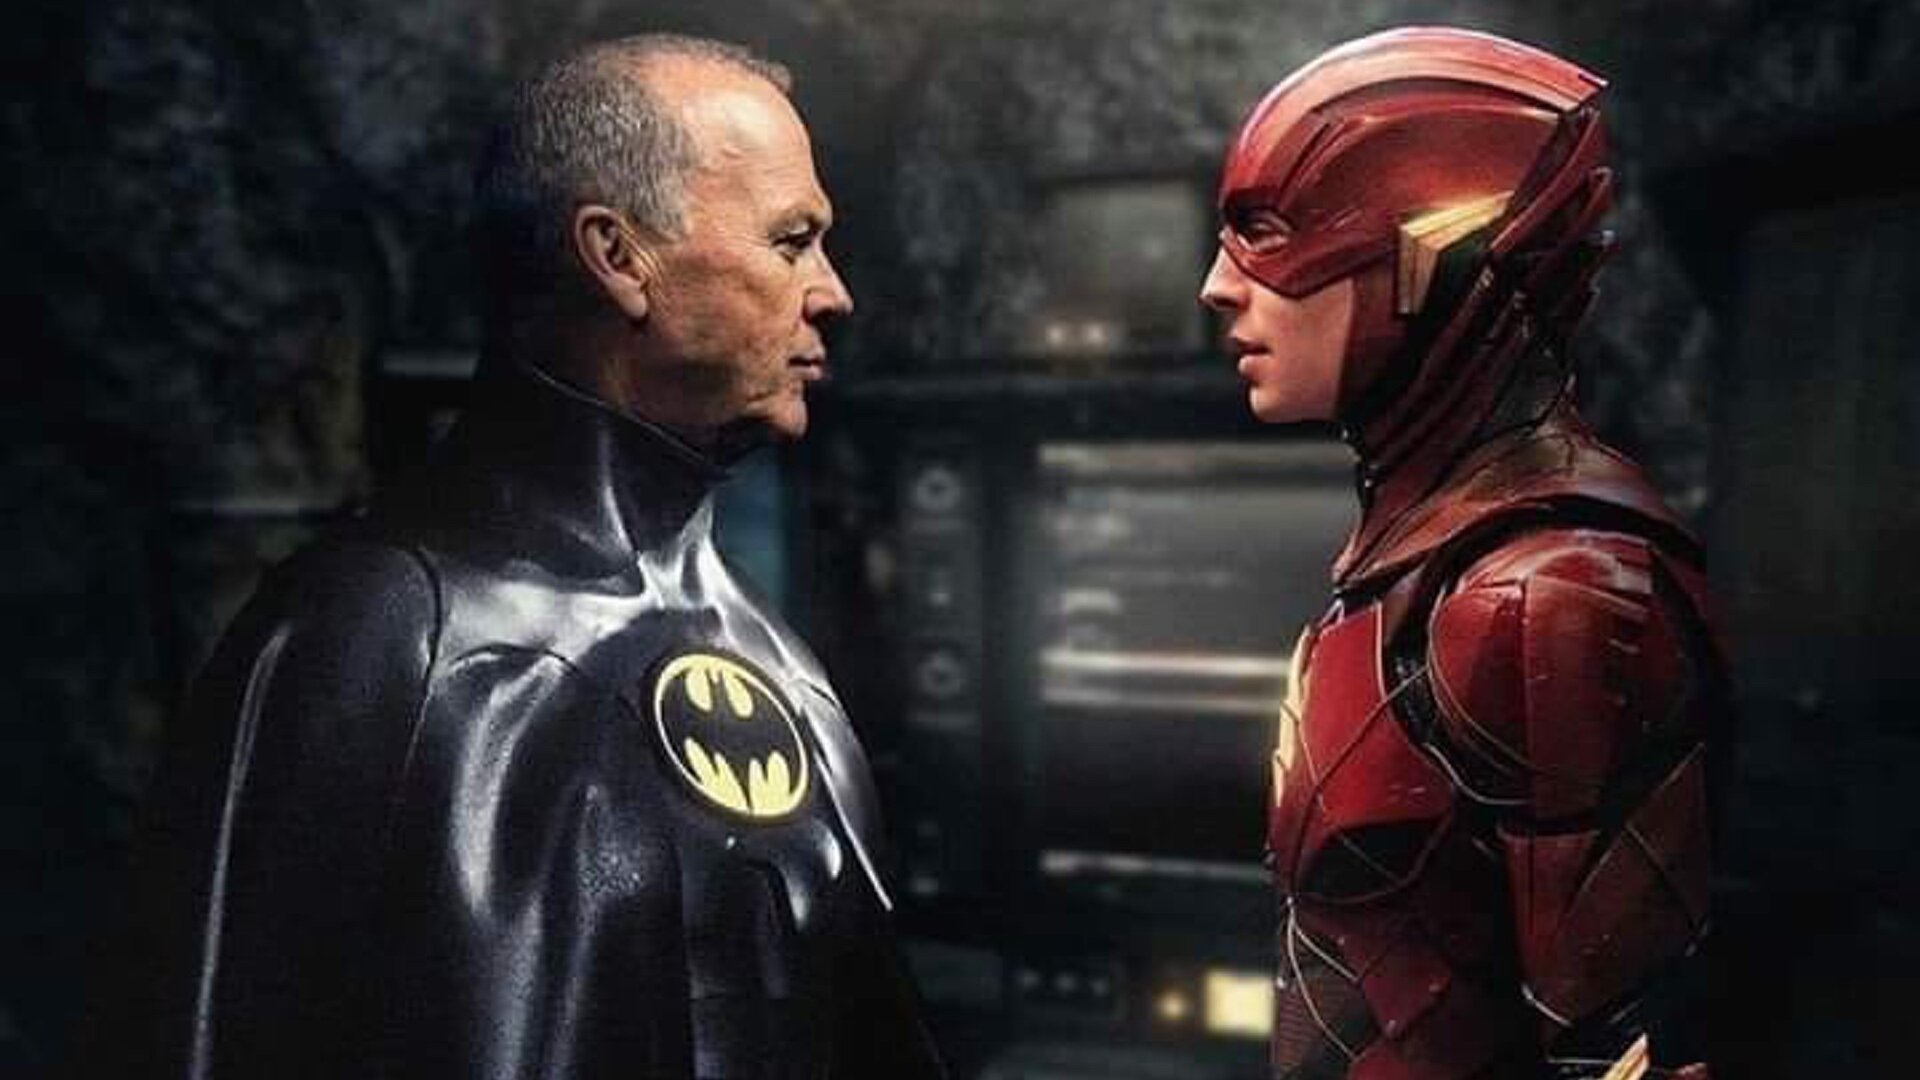 Michael Keaton's Batman Meets Ezra Miller's The Flash in Fan-Made